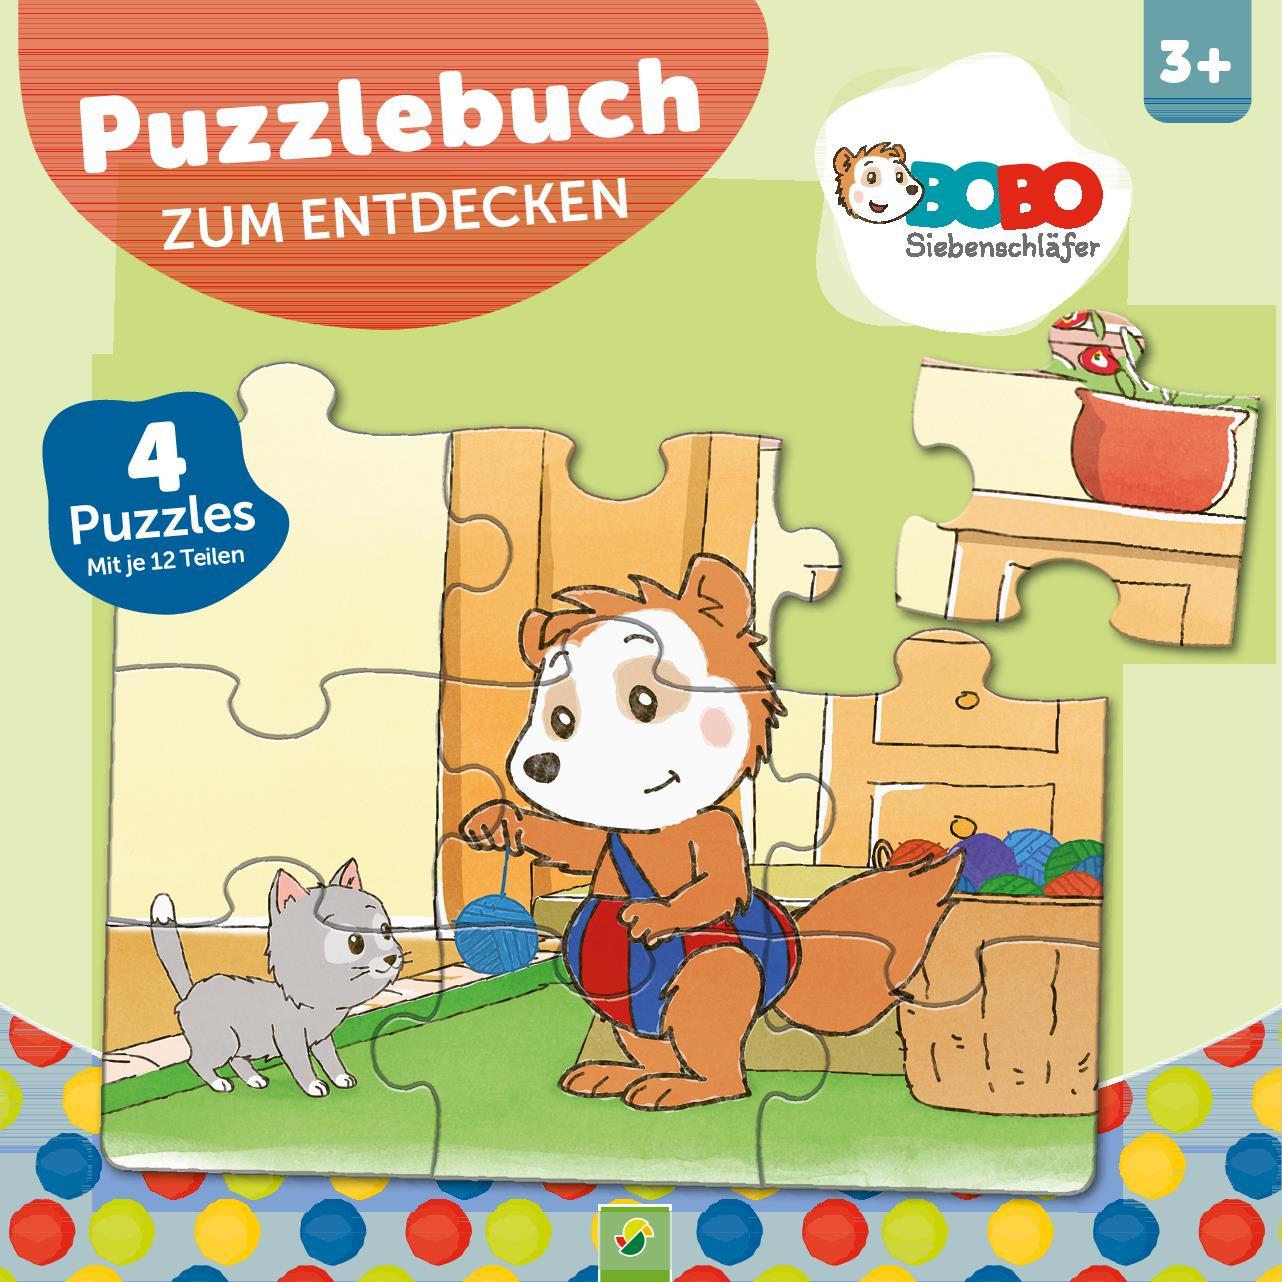 Kniha Bobo Siebenschläfer Puzzlebuch zum Entdecken 